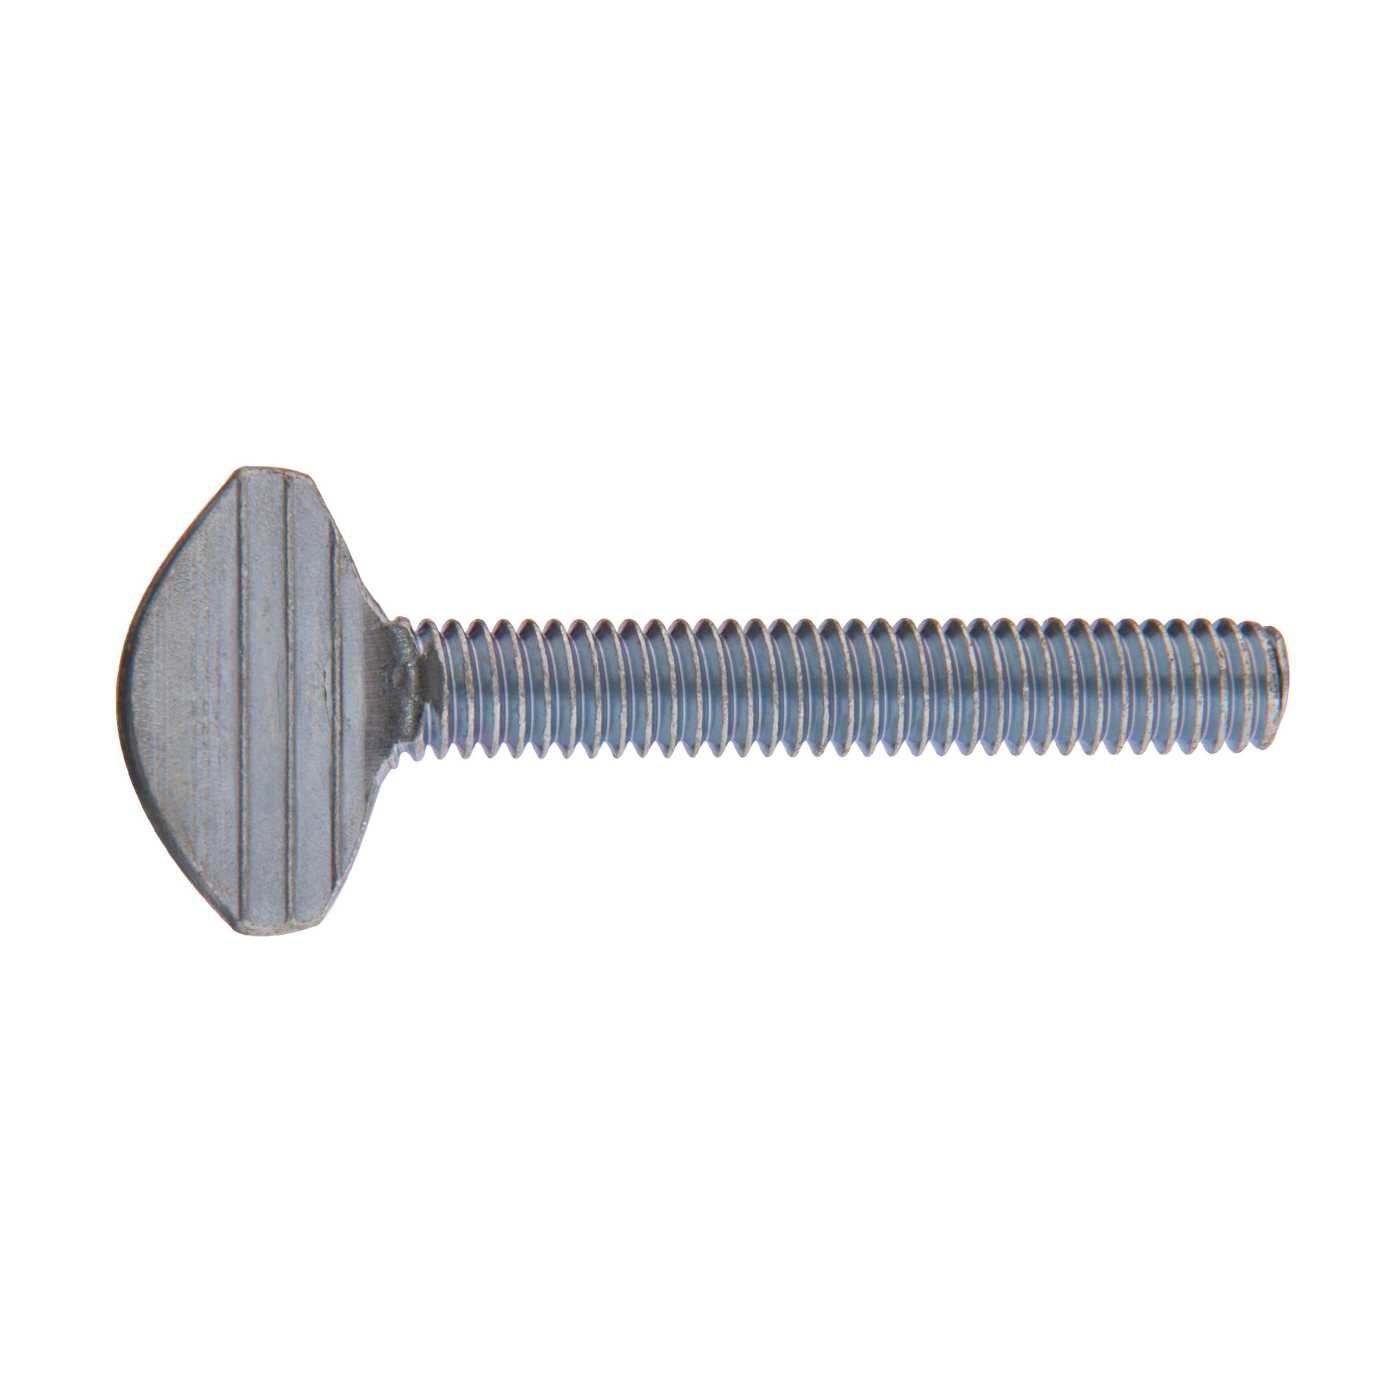 880948 Machine Screw, #10-32 Thread, 1/2 in L, Fine Thread, Blunt Point, Steel, Zinc-Plated